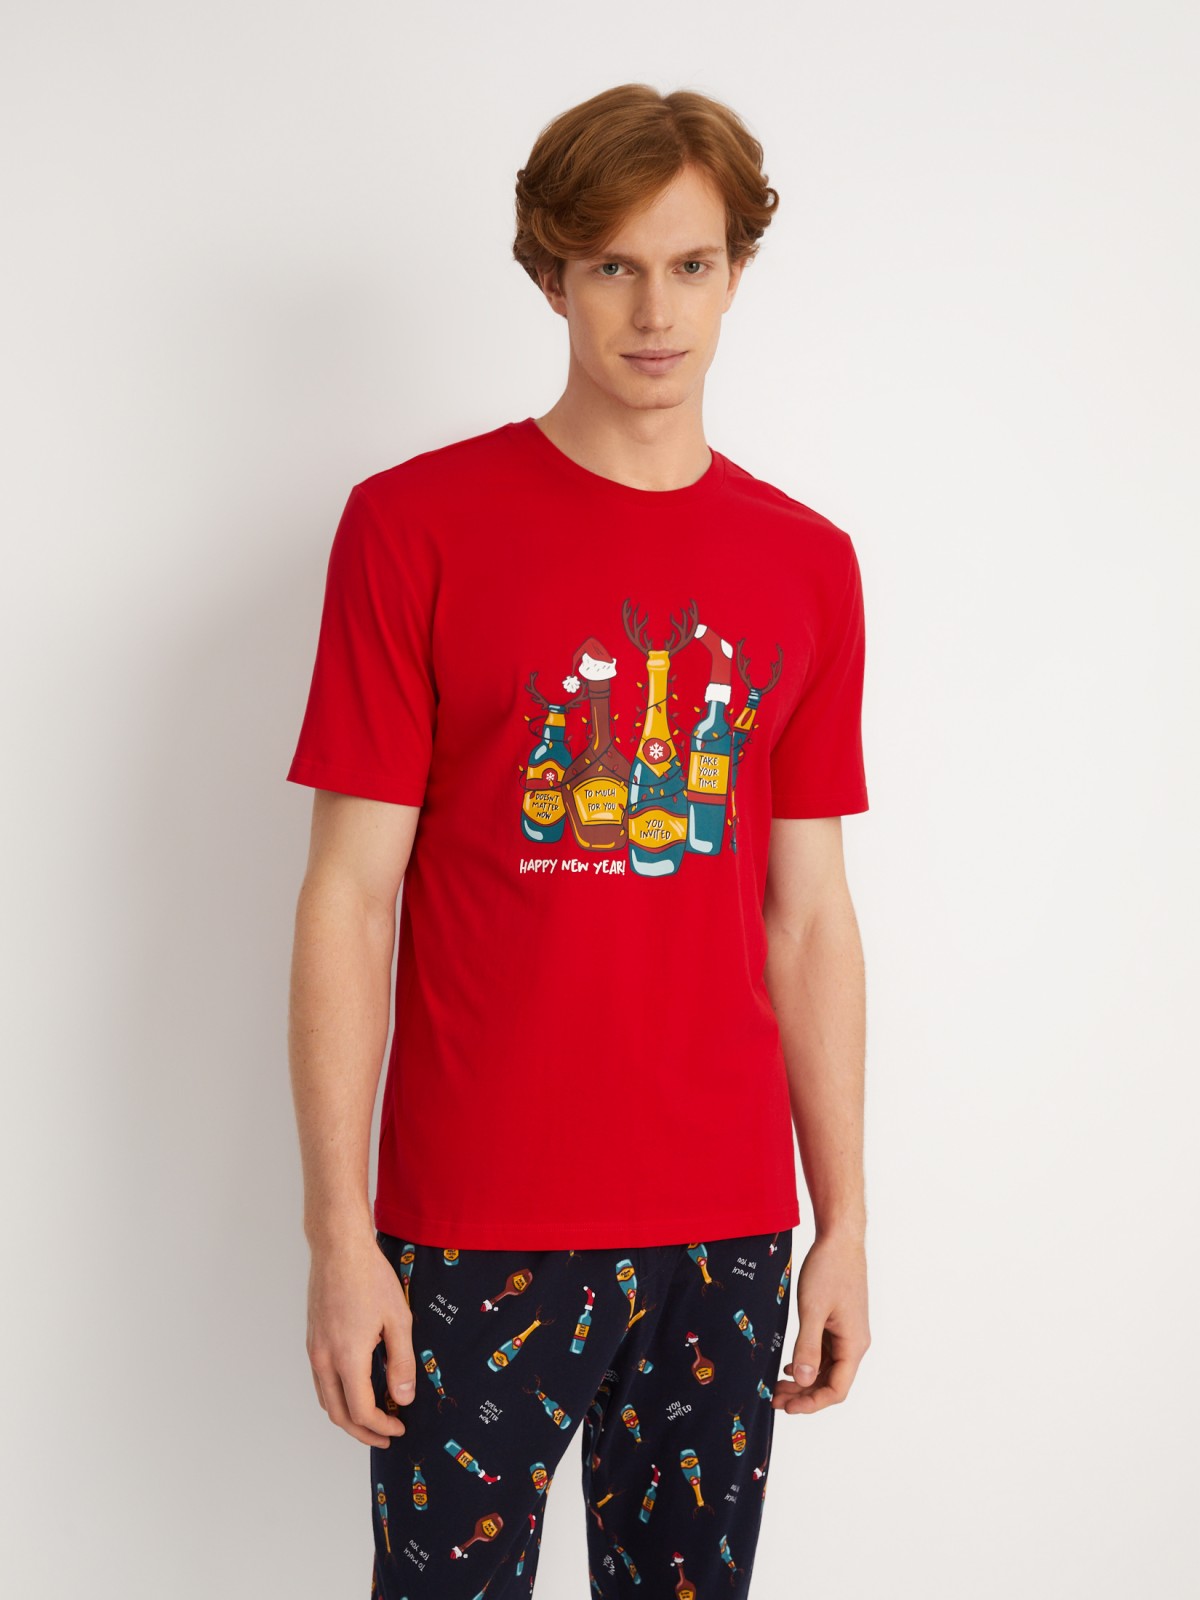 Домашний пижамный комплект новогодний (футболка и штаны) zolla 613458759051, цвет красный, размер S